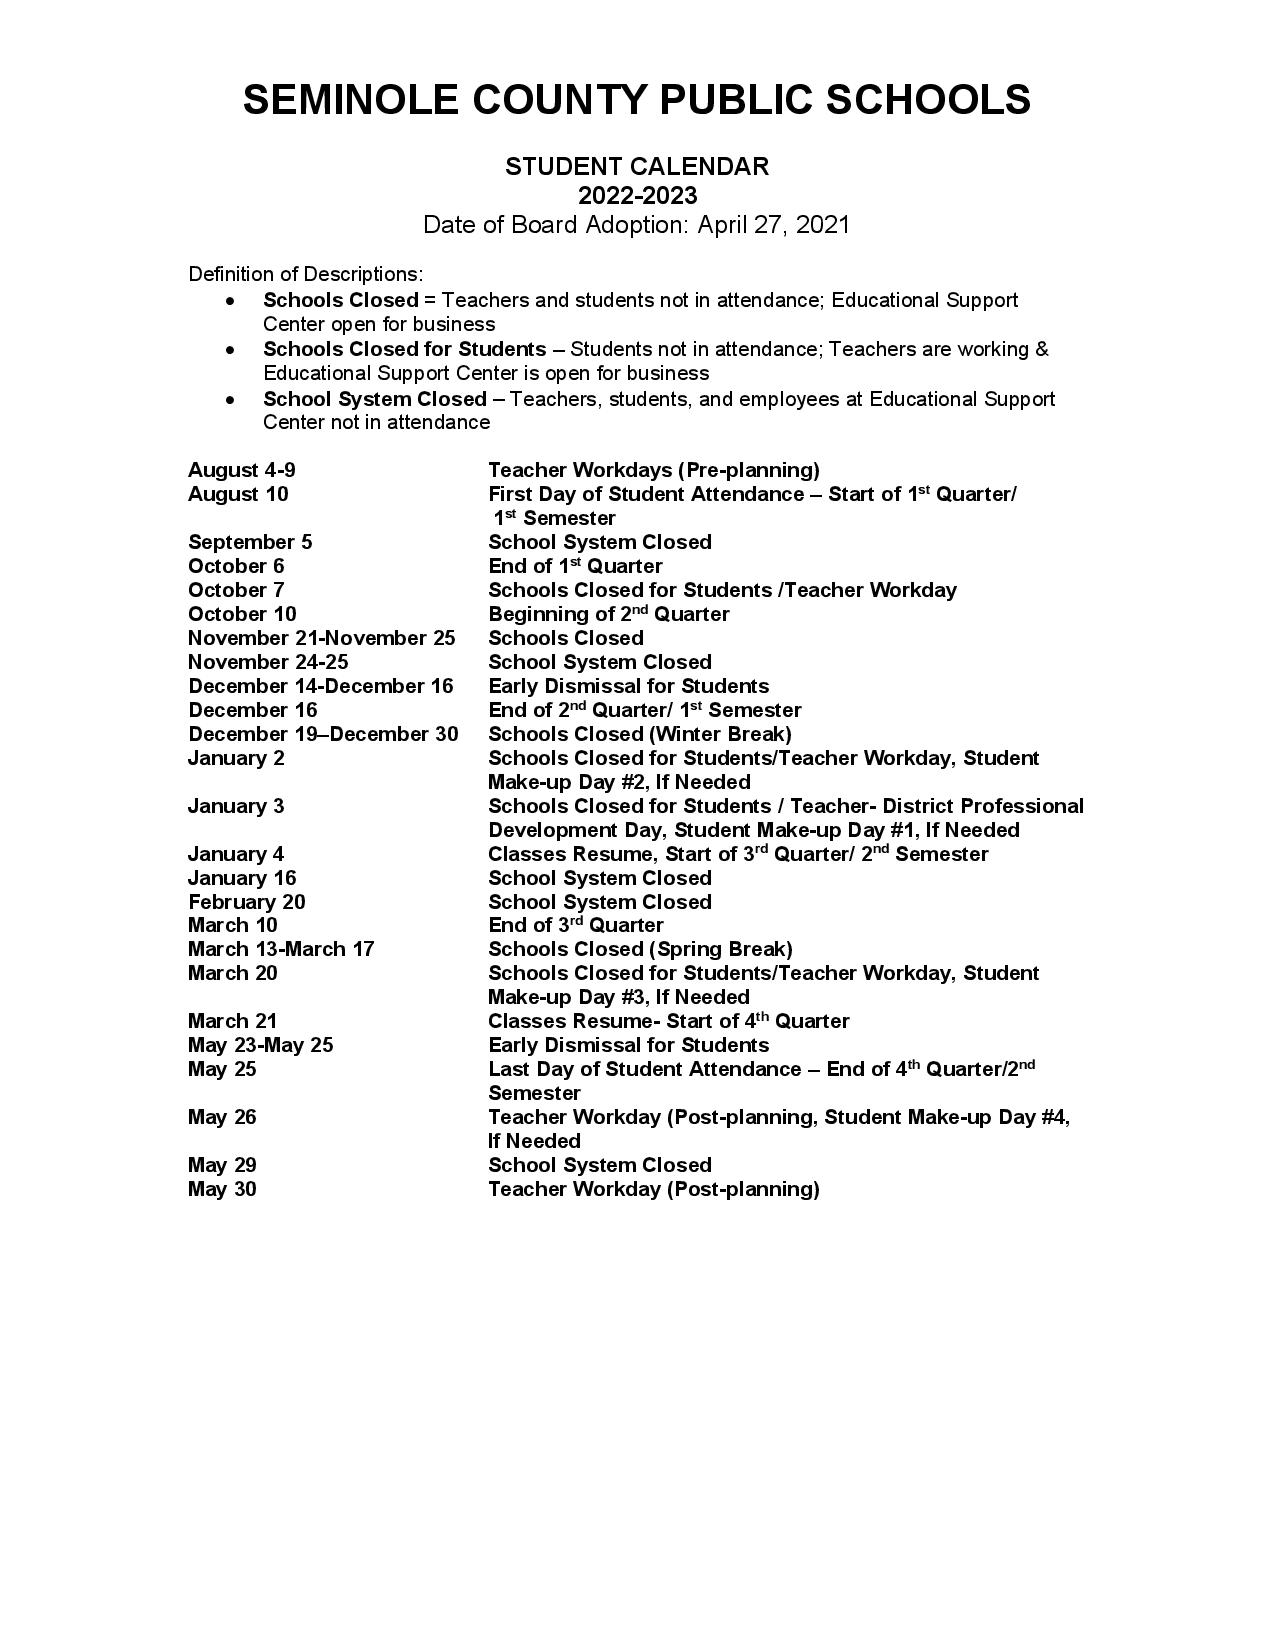 Seminole County Public Schools Calendar 2022-2023